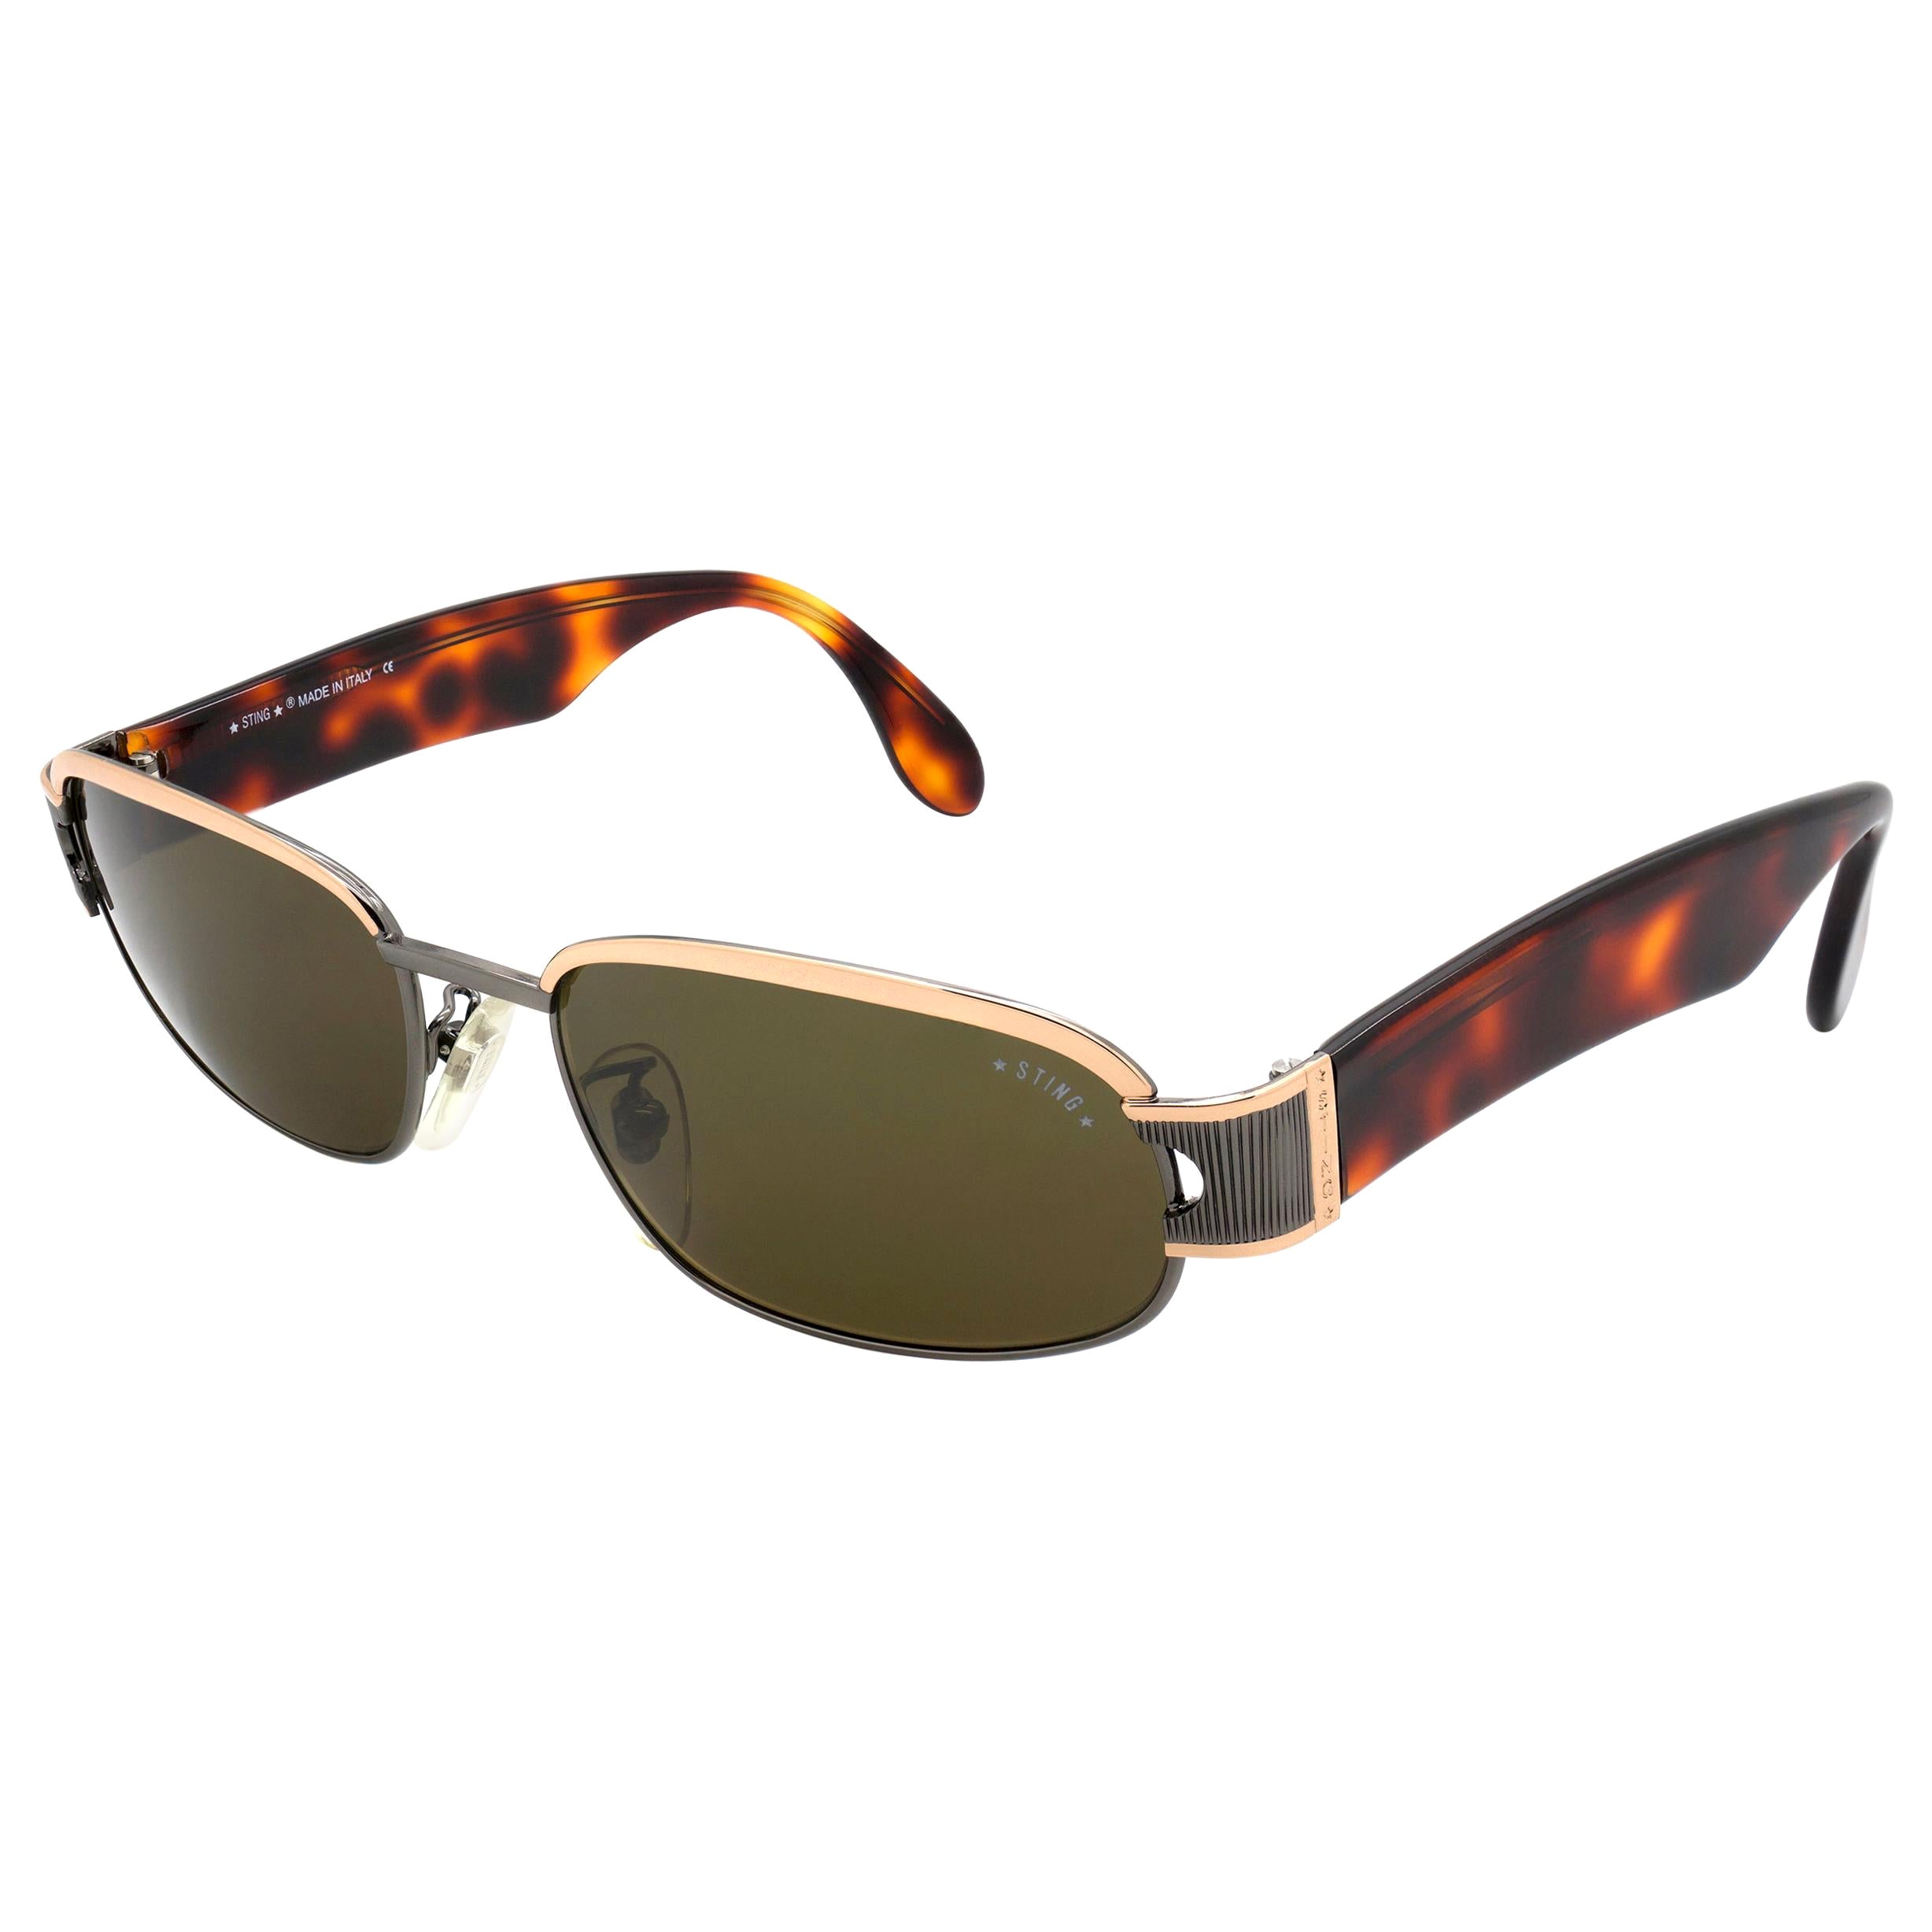 Sting vintage sunglasses for men For Sale